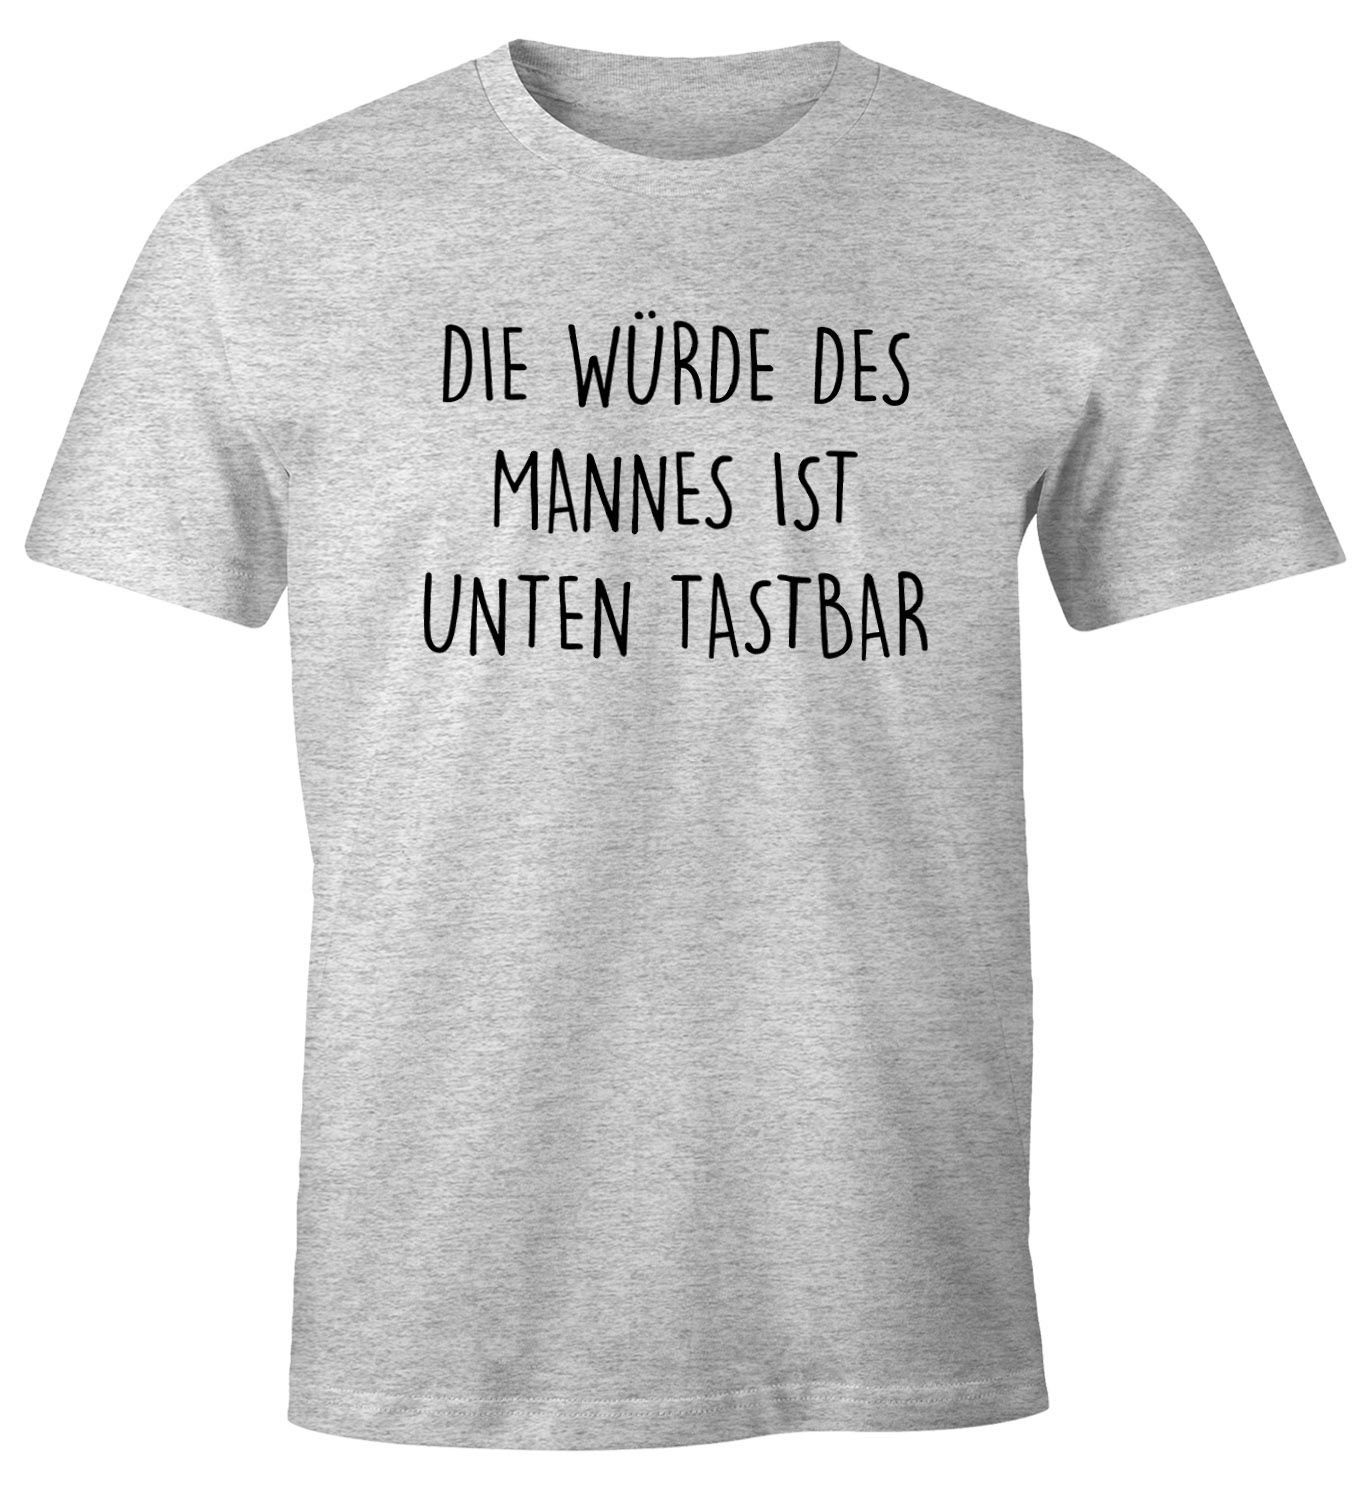 MoonWorks Print-Shirt Lustiges Herren T-Shirt mit Spruch Die Würde des Mannes ist unten tastbar Fun-Shirt Moonworks® mit Print grau